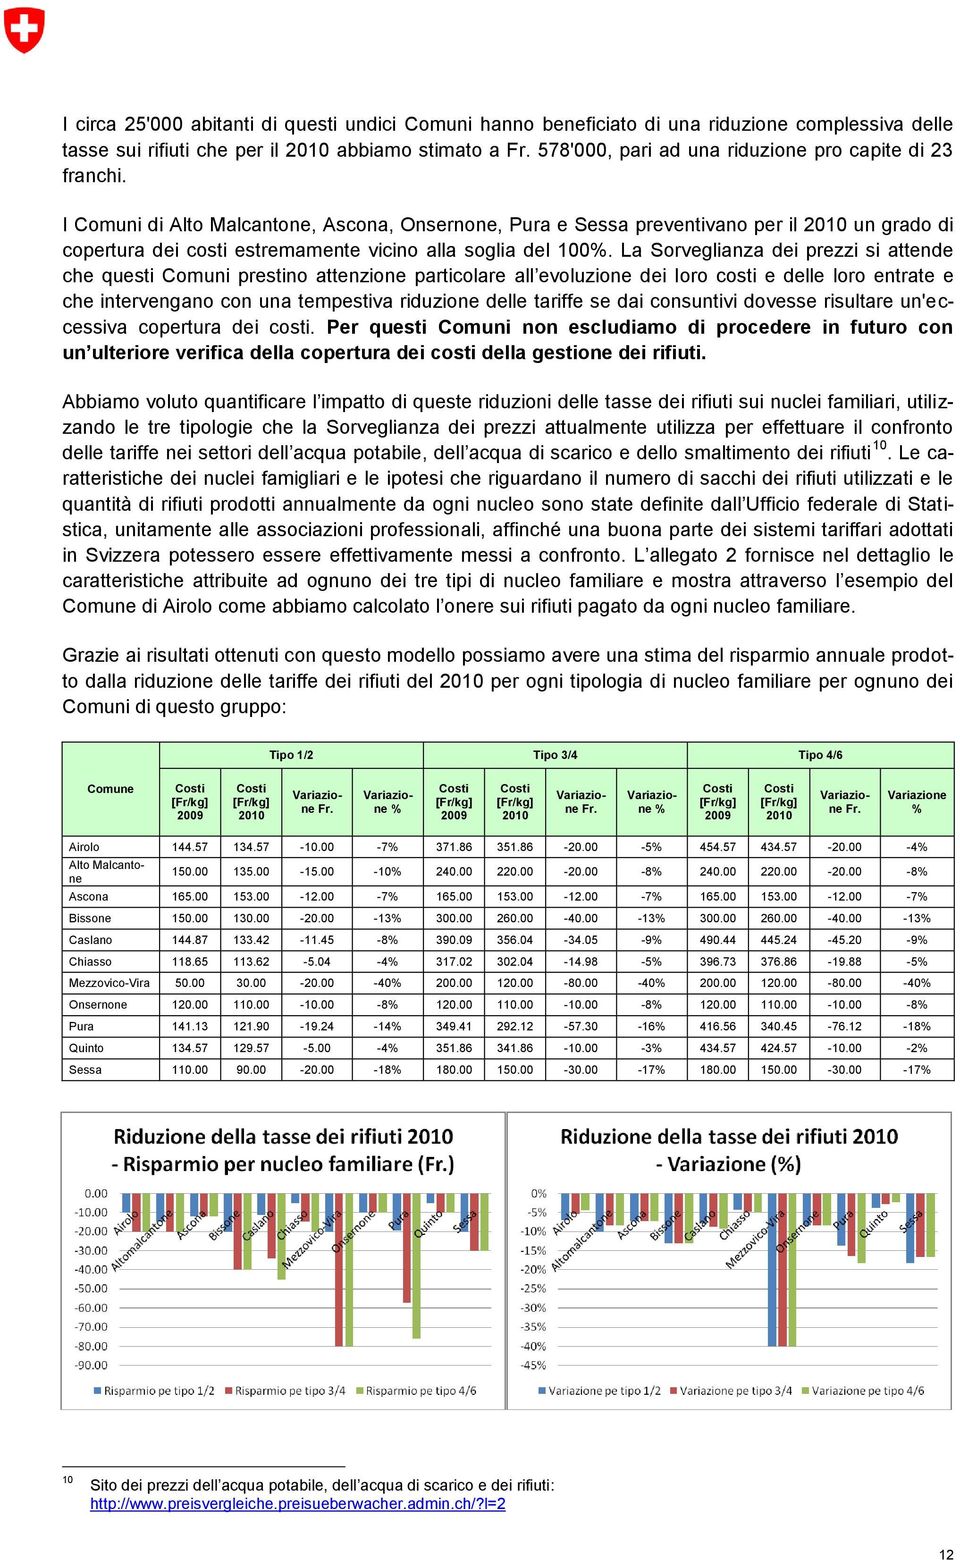 I Comuni di Alto Malcantone, Ascona, Onsernone, Pura e Sessa preventivano per il 2010 un grado di copertura dei costi estremamente vicino alla soglia del 100%.